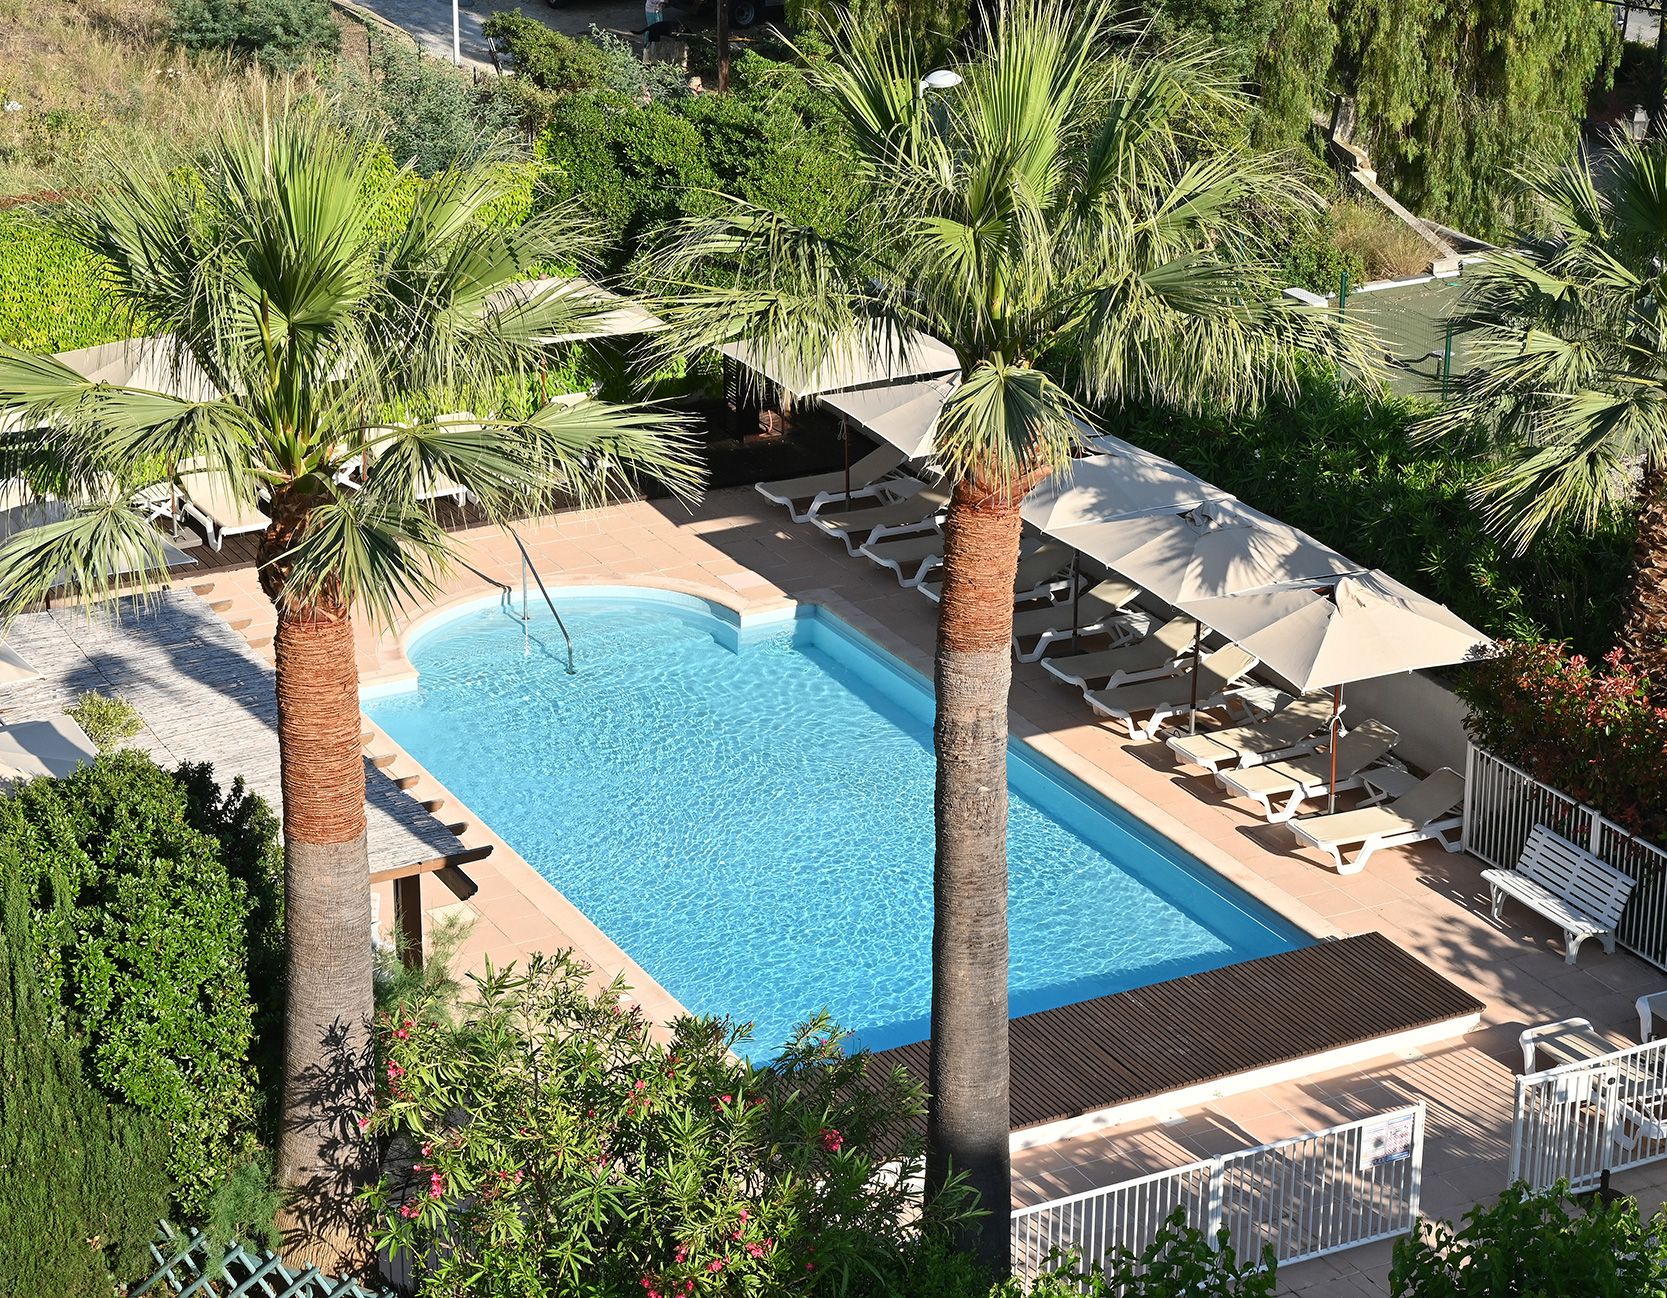 L'hôtel la Calanque au Lavandou dispose d’une piscine extérieure et d’un jardin